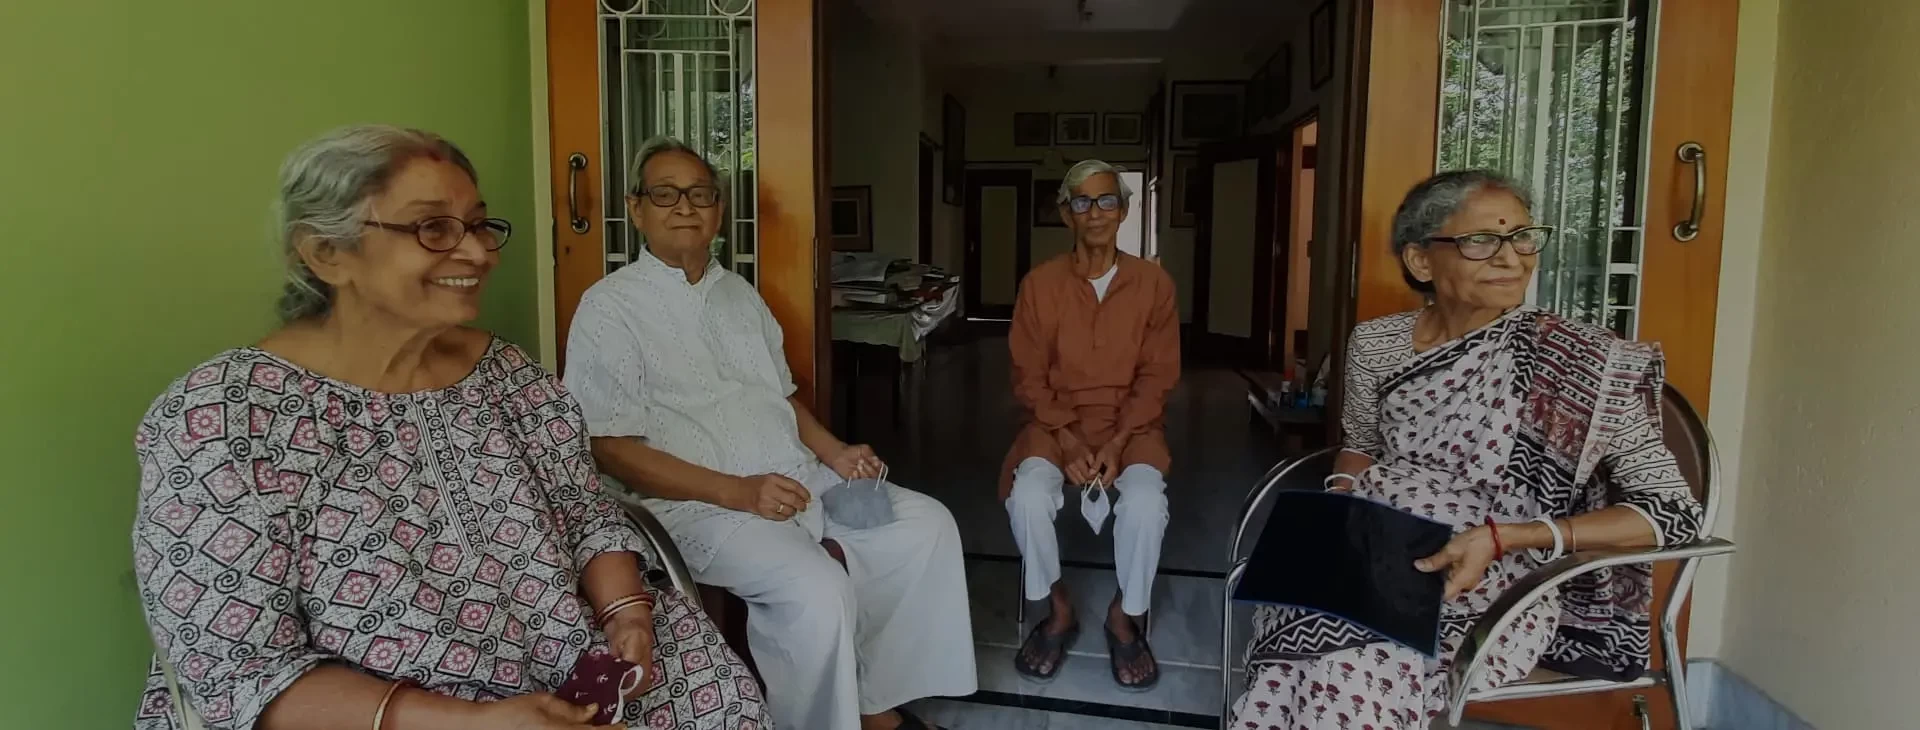 60 Plus Care elder care service in Kolkata